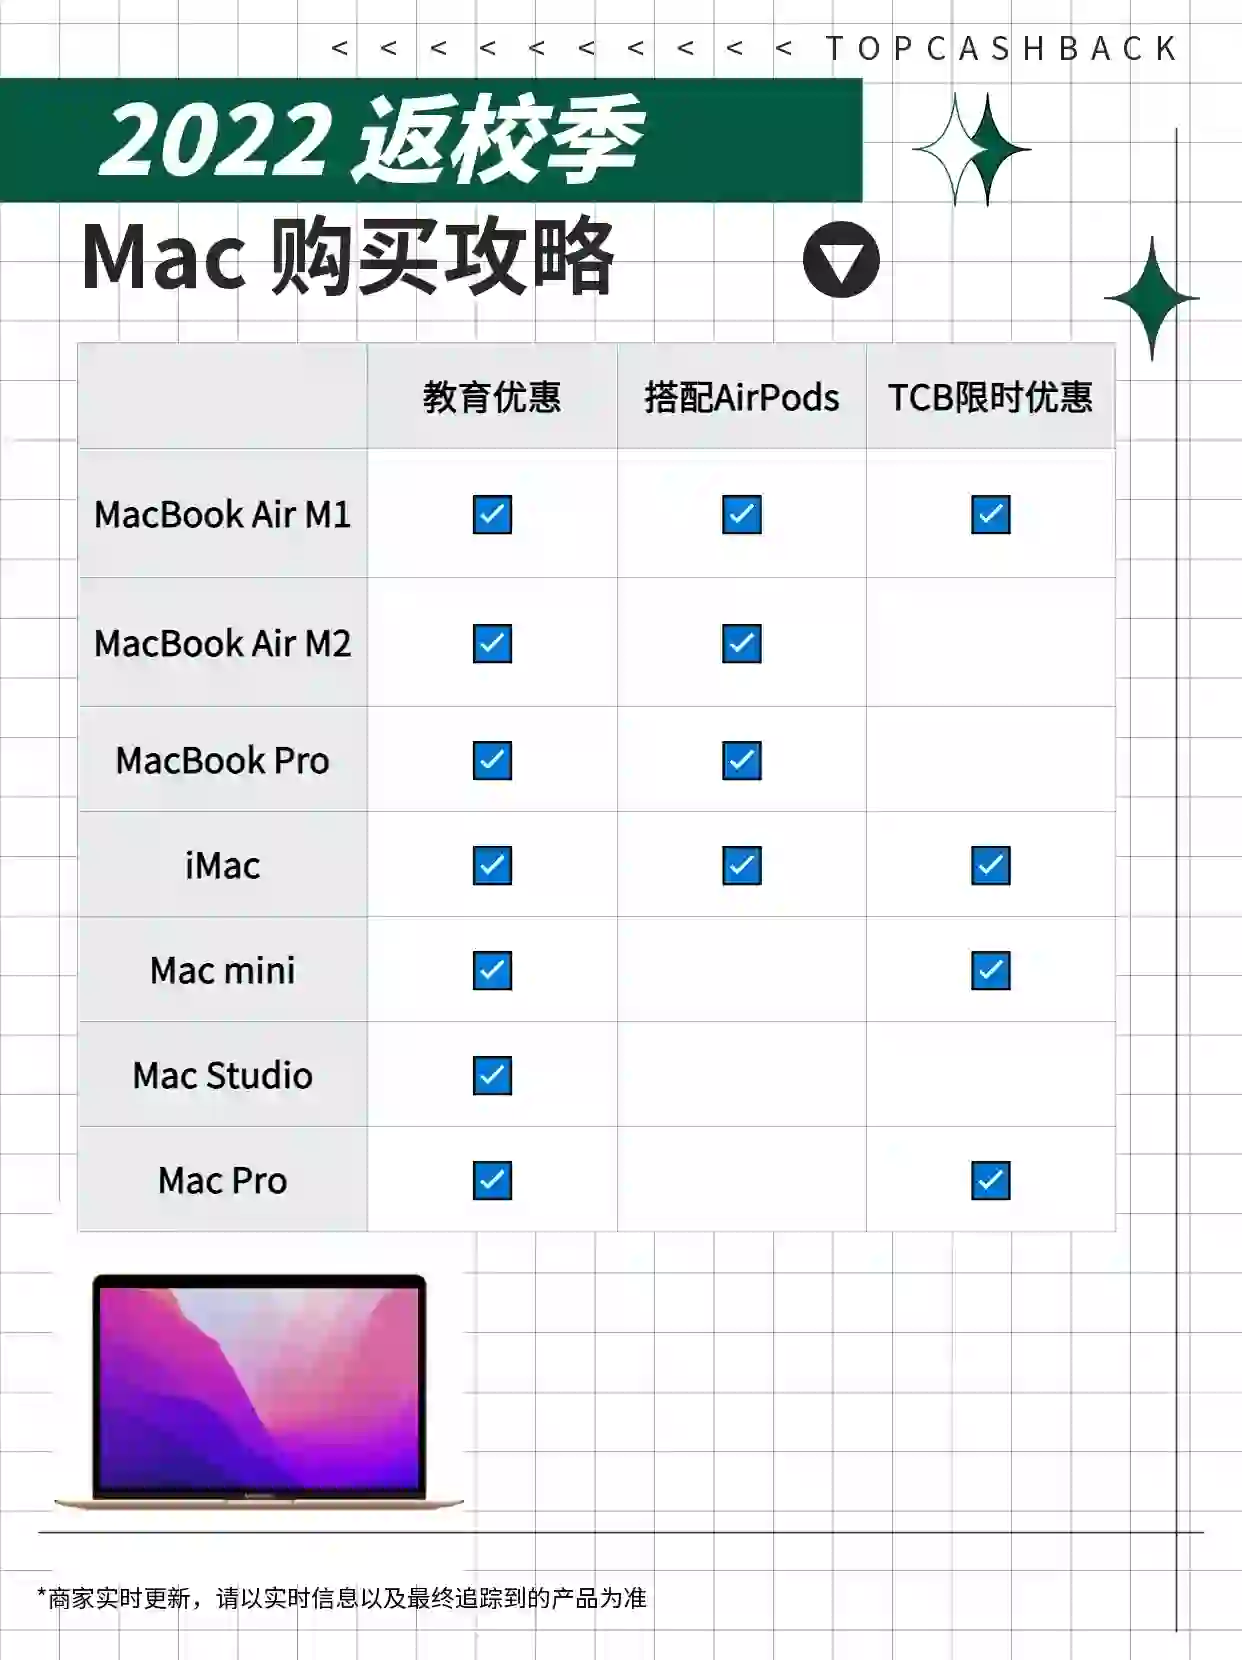 2022年苹果教育优惠Mac电脑返利